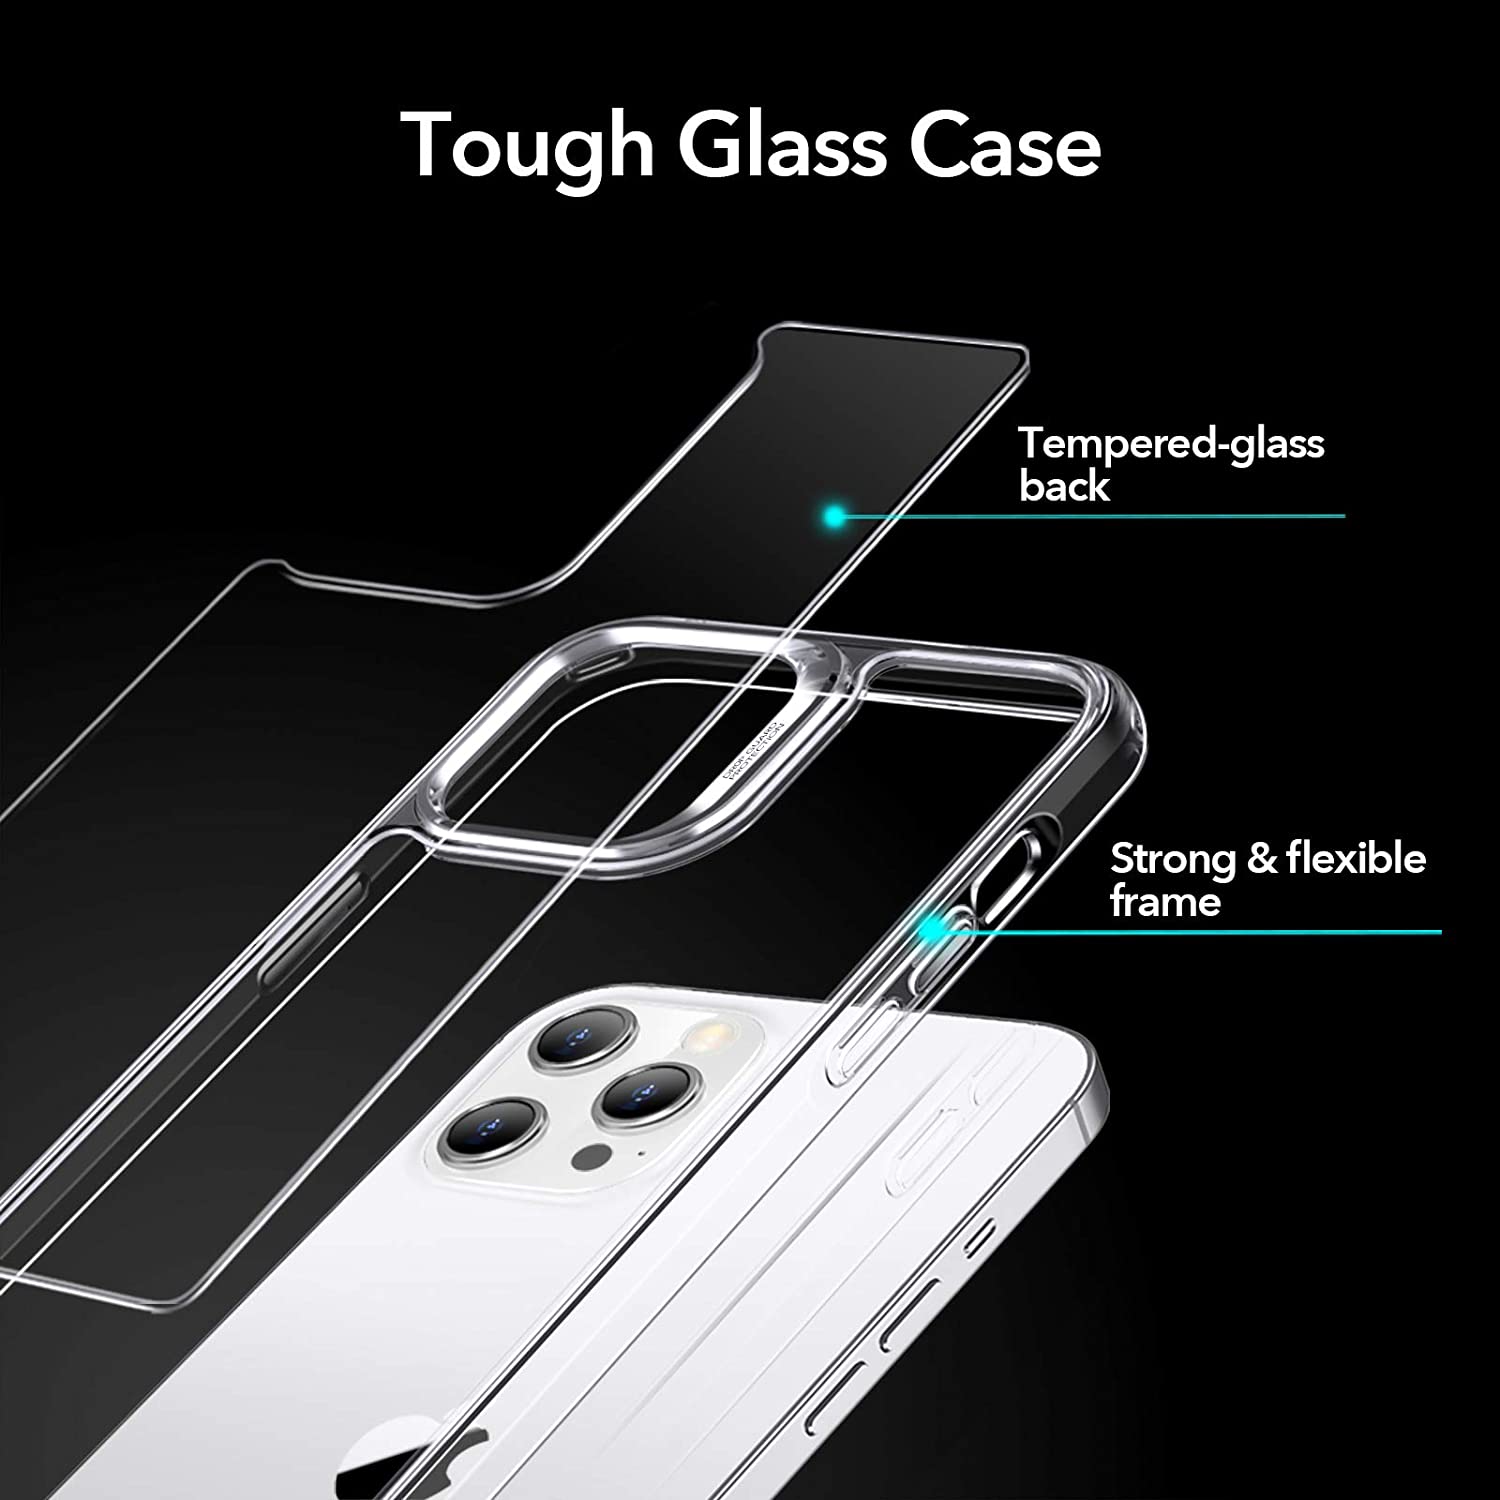 Ốp Lưng Cho iPhone 12 Mini / 12 & 12 Pro / 12 Pro Max ESR Echo Tempered Glass Hard Case (Mặt Lưng Kính Cường Lực) - Hàng Nhập Khẩu